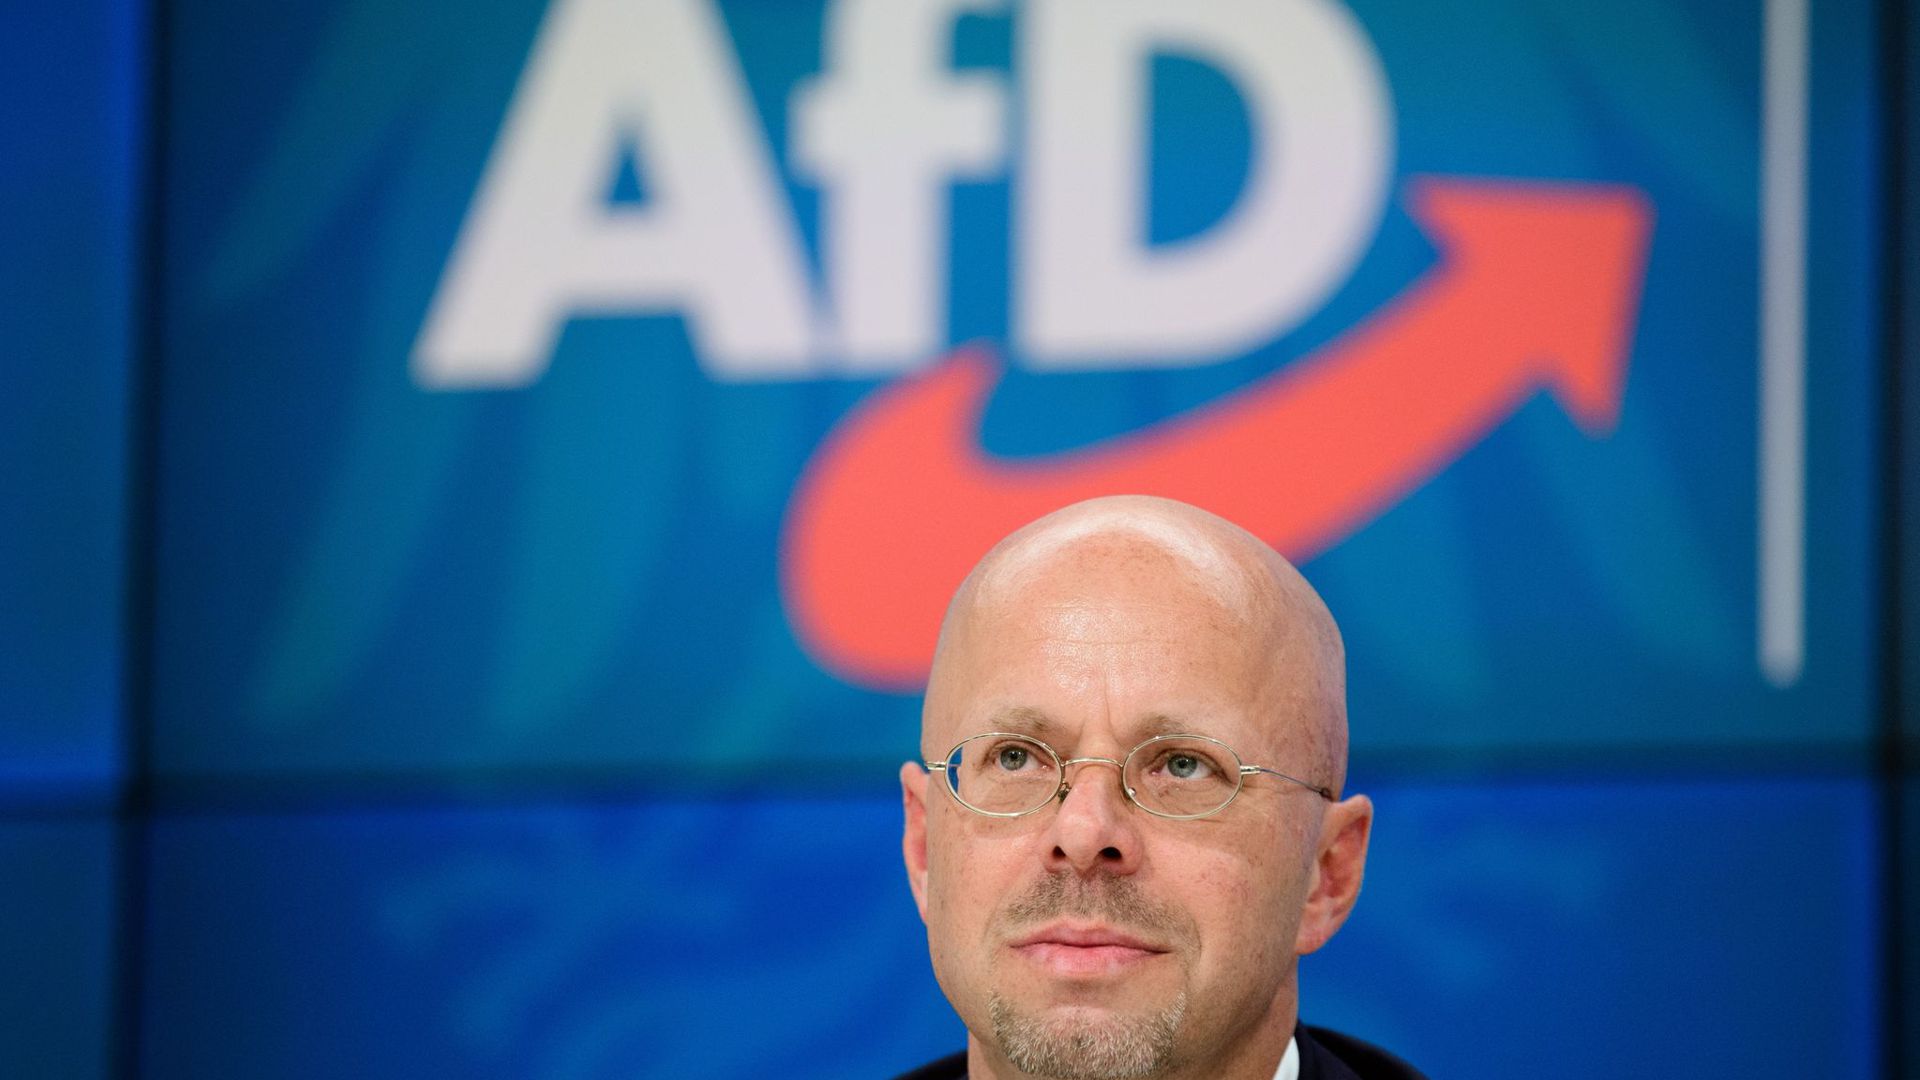 Andreas Kalbitz lässt den Fraktionsvorsitz zunächst bis zu einem Gerichtsentscheid über seinen Partei-Rauswurf ruhen.